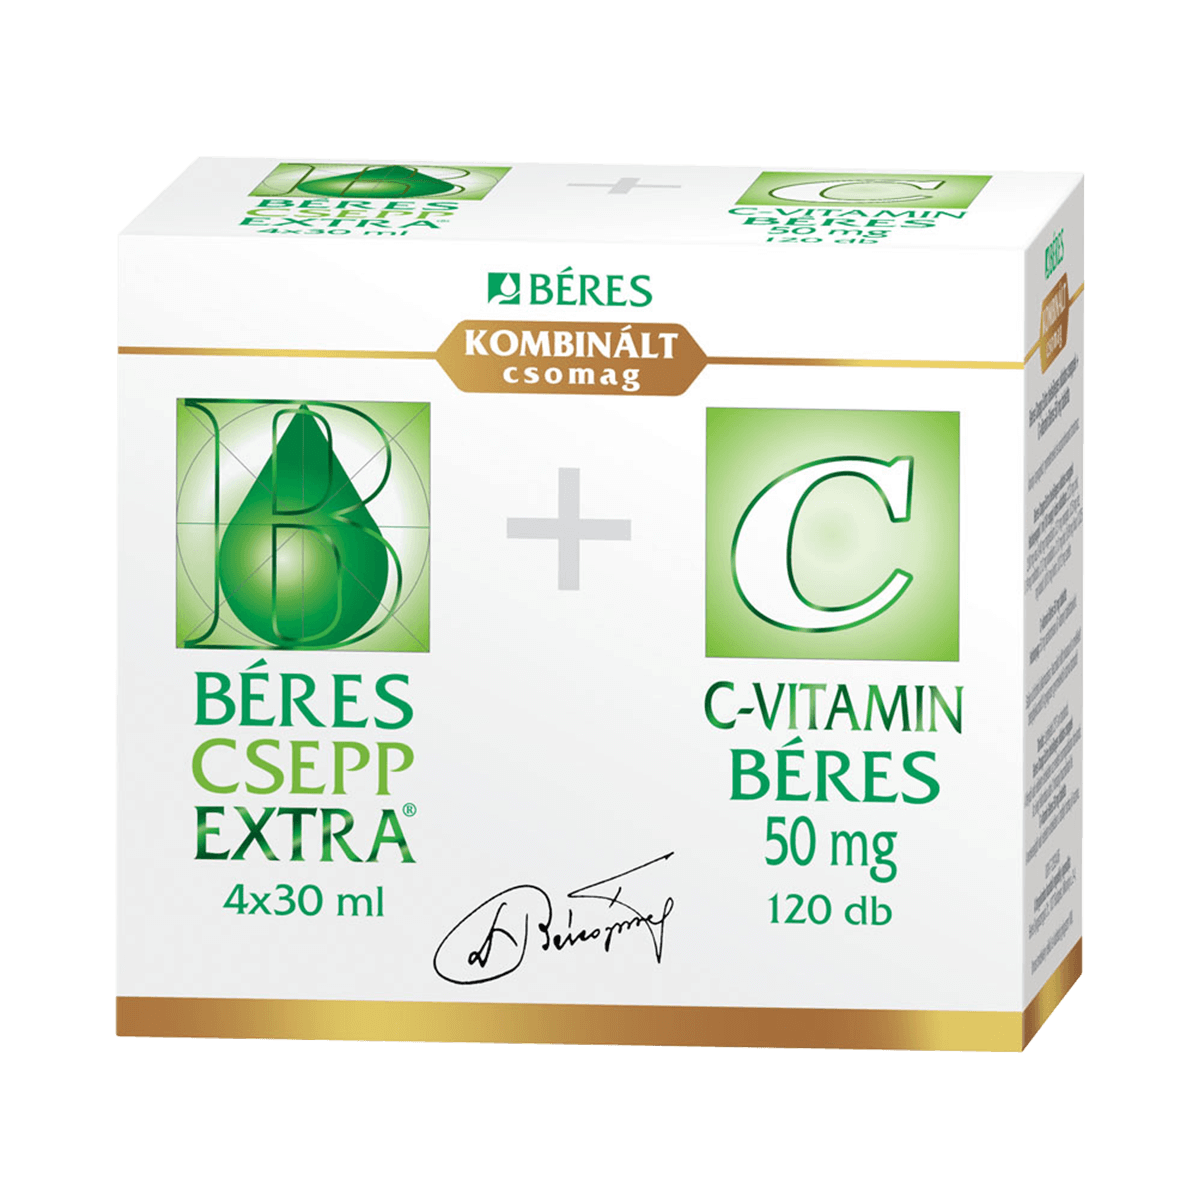 Béres Csepp Extra + C-vitamin kombinált csomag